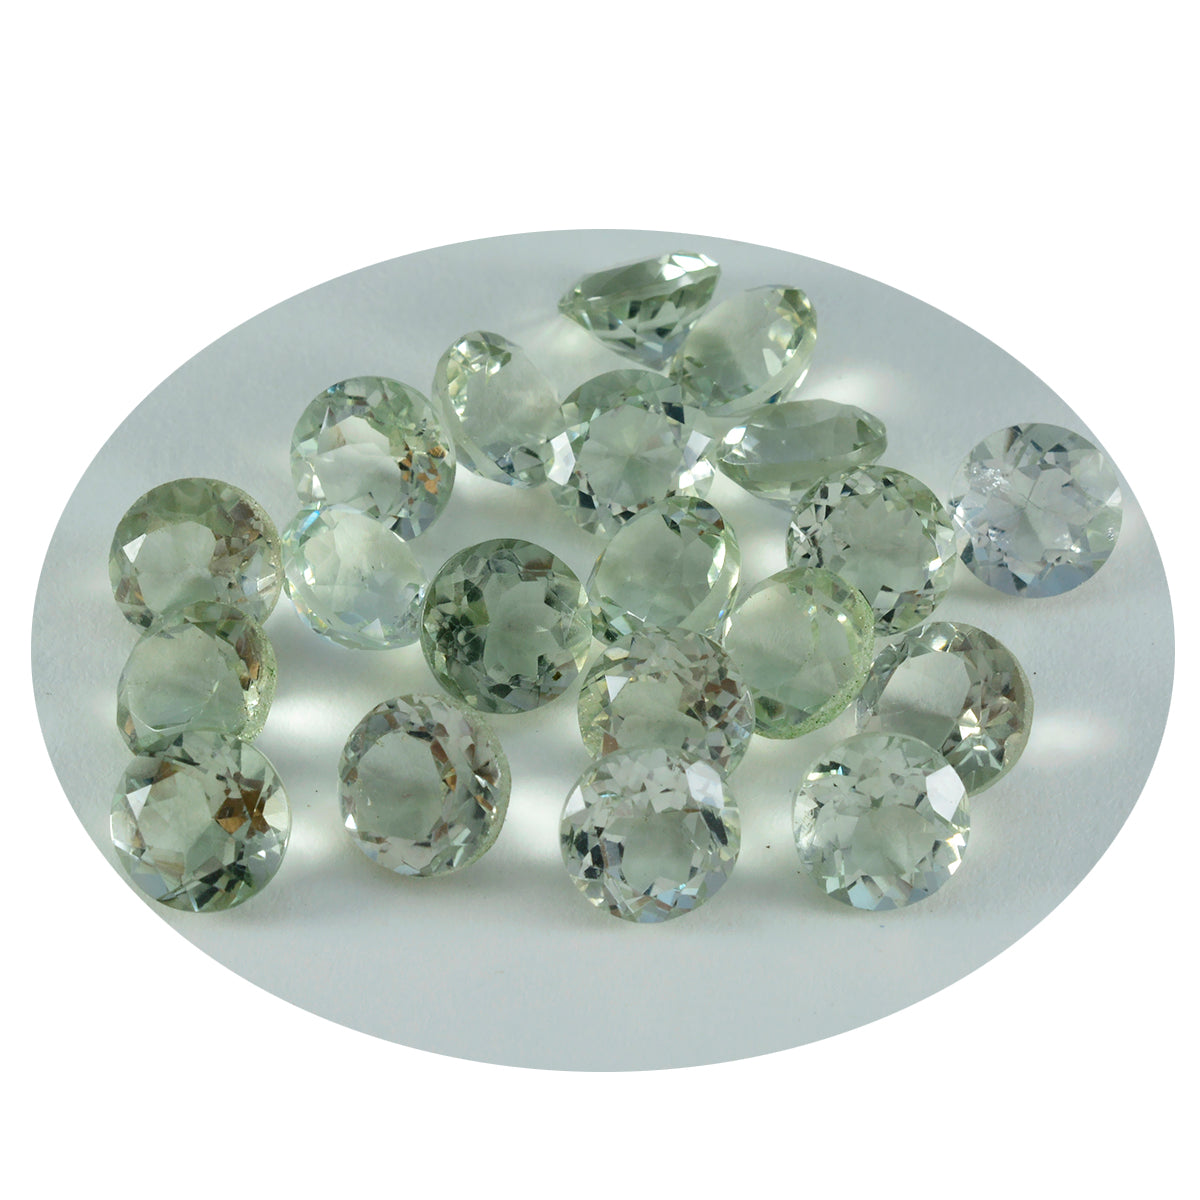 Riyogems 1 Stück grüner Amethyst, facettiert, 5 x 5 mm, runde Form, gut aussehende, hochwertige lose Edelsteine